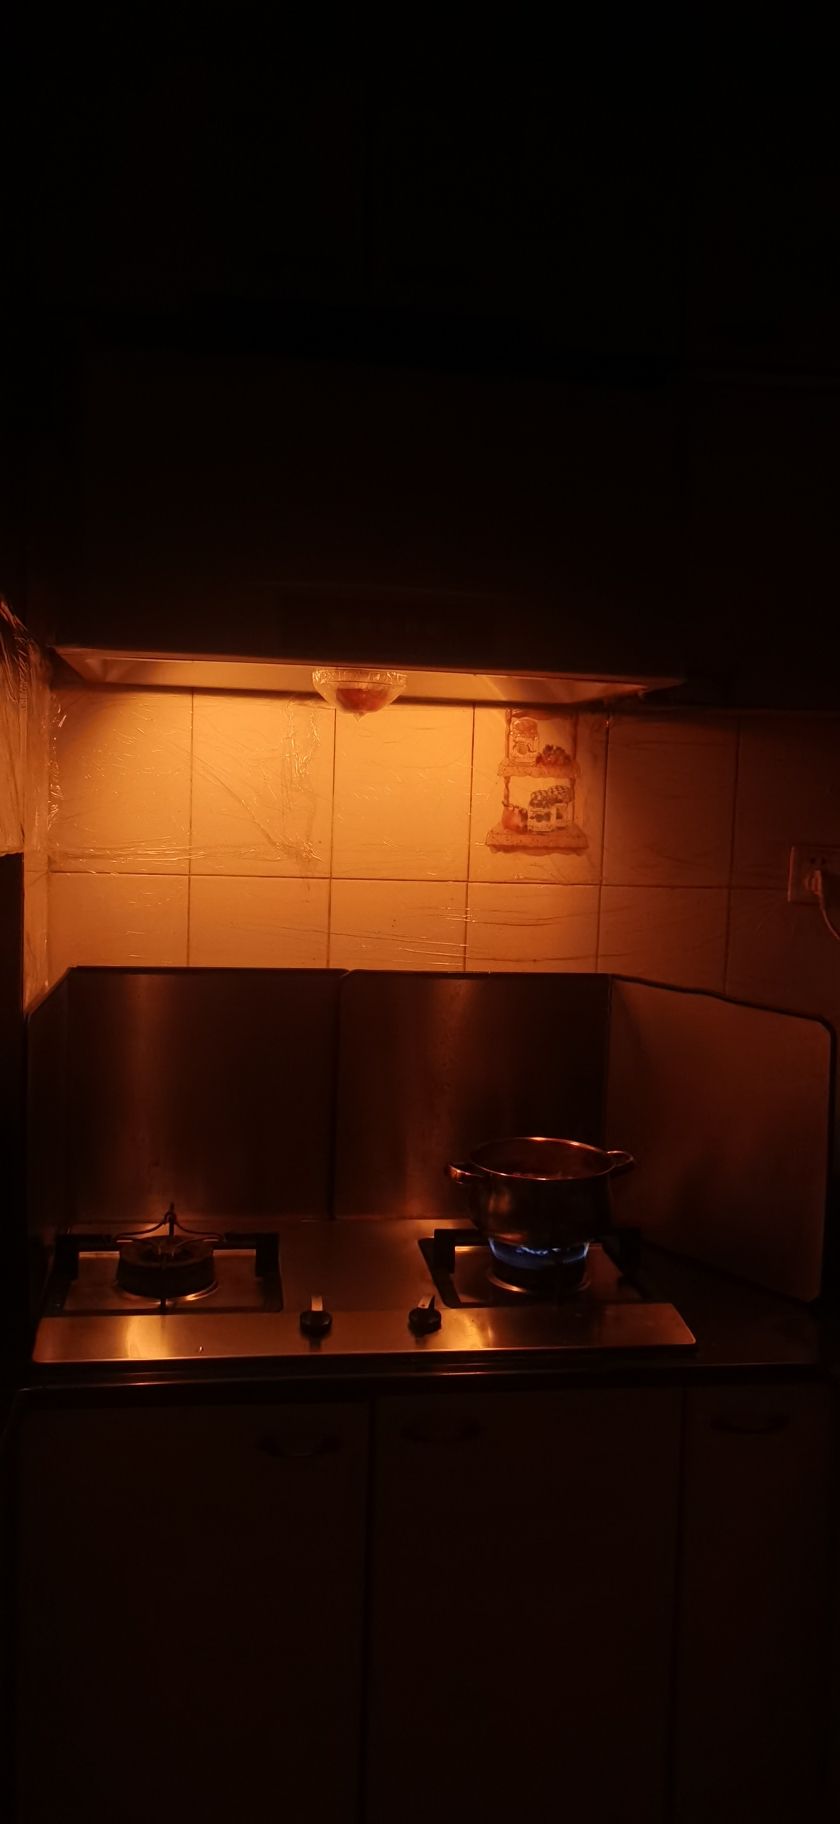 煮着煮着厨房顶灯熄灭了 观赏鱼论坛 第3张